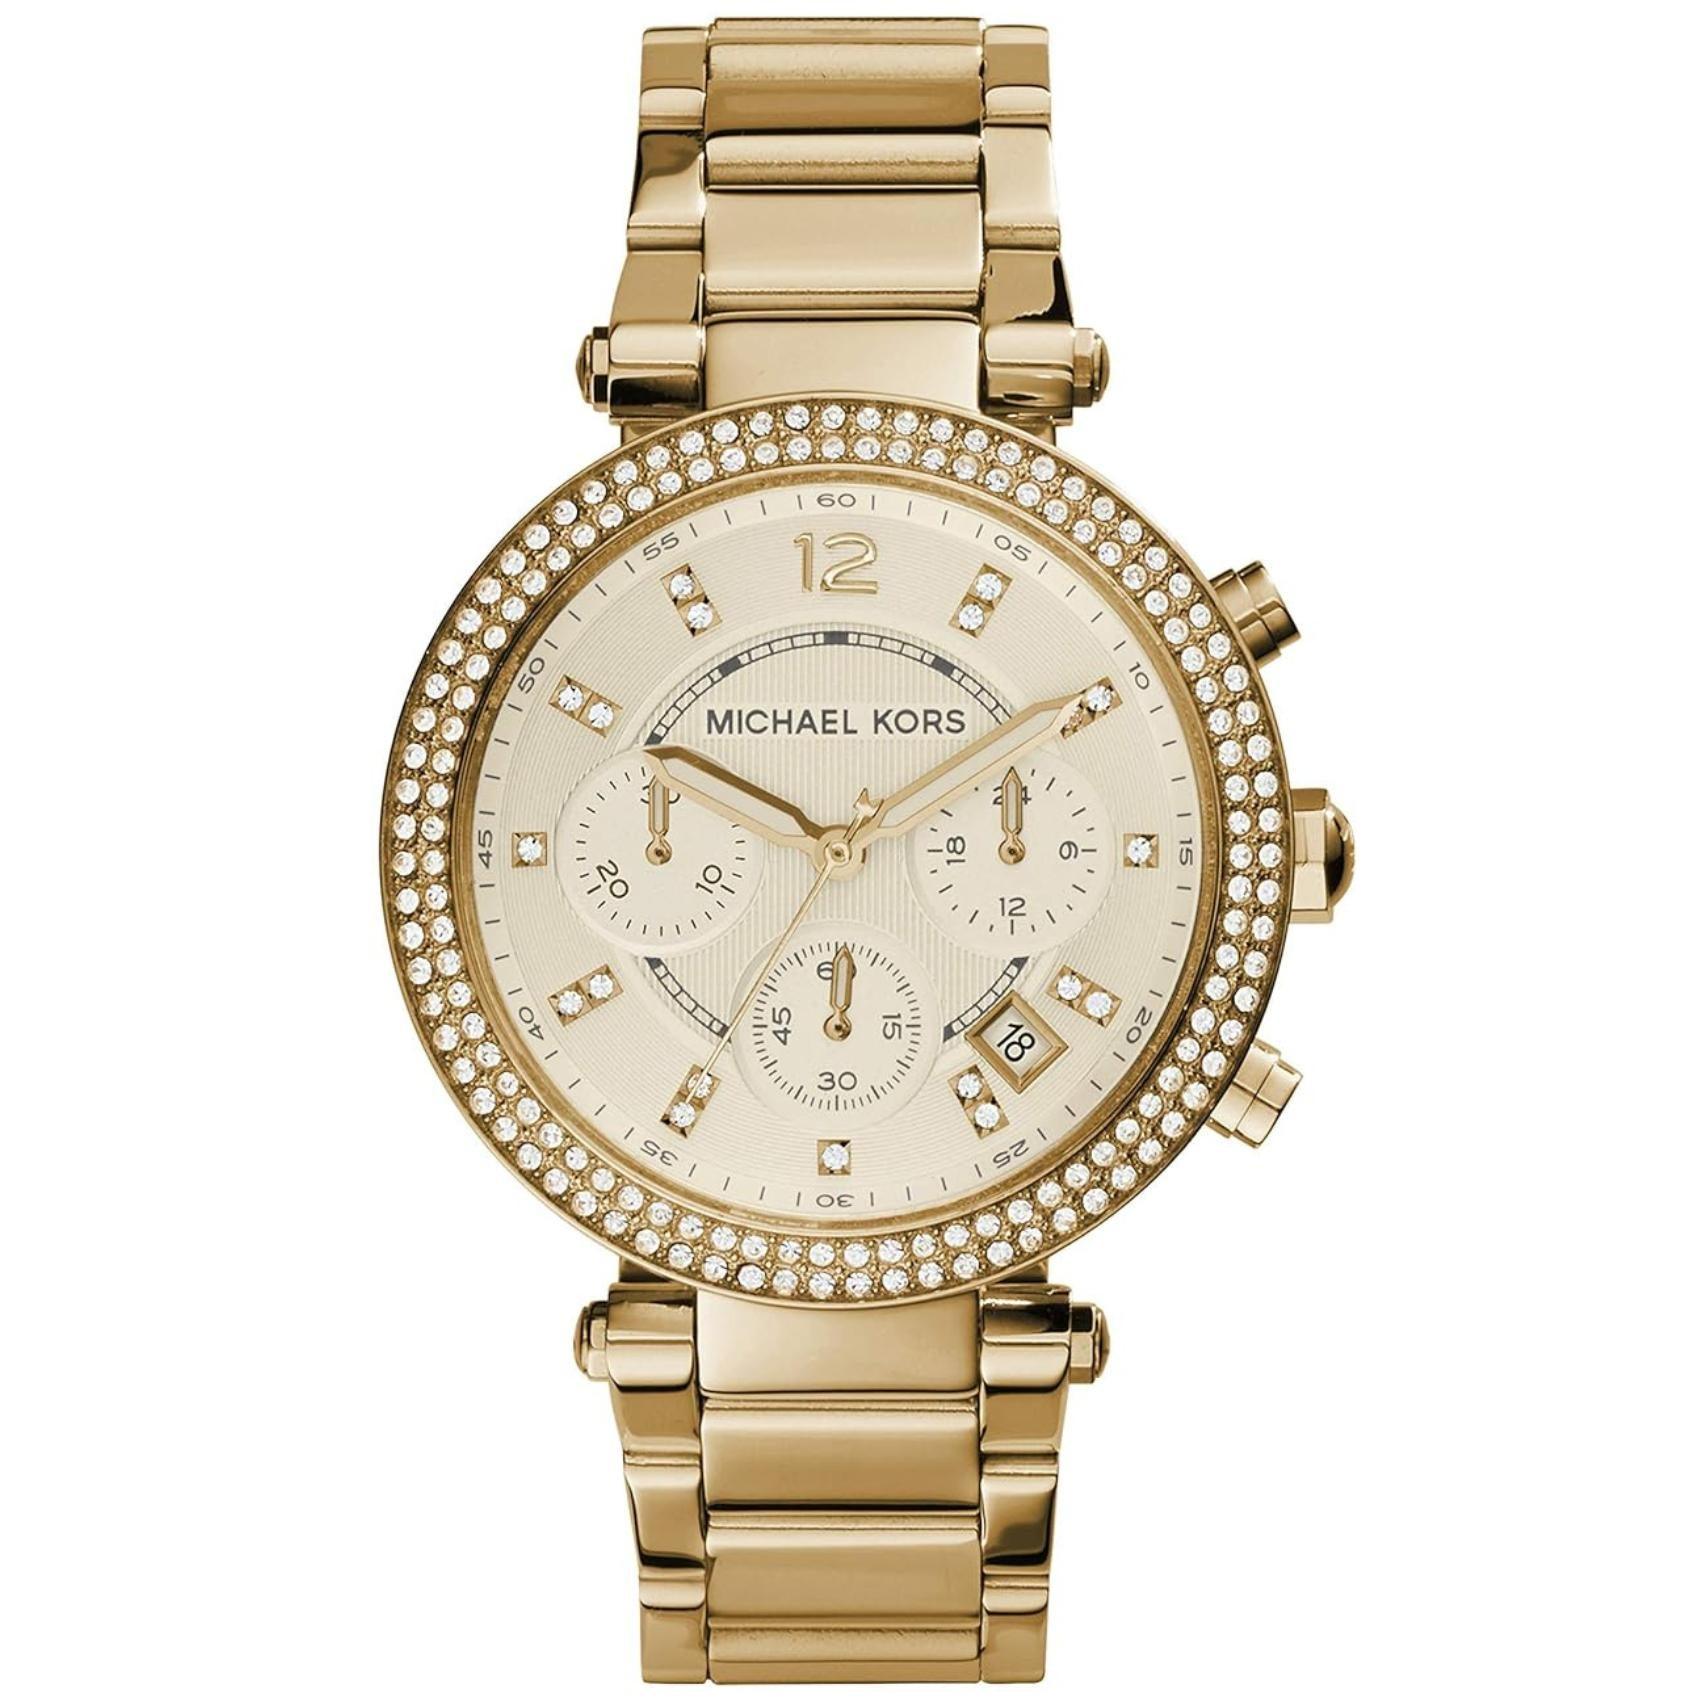 Γυναικείο ρολόι Michael Kors Parker MK5354 χρονογράφος με ατσάλινο μπρασελέ σε χρυσό χρώμα, στρογγυλό χρυσό καντράν και στεφάνι 28mm με ζιργκόν.